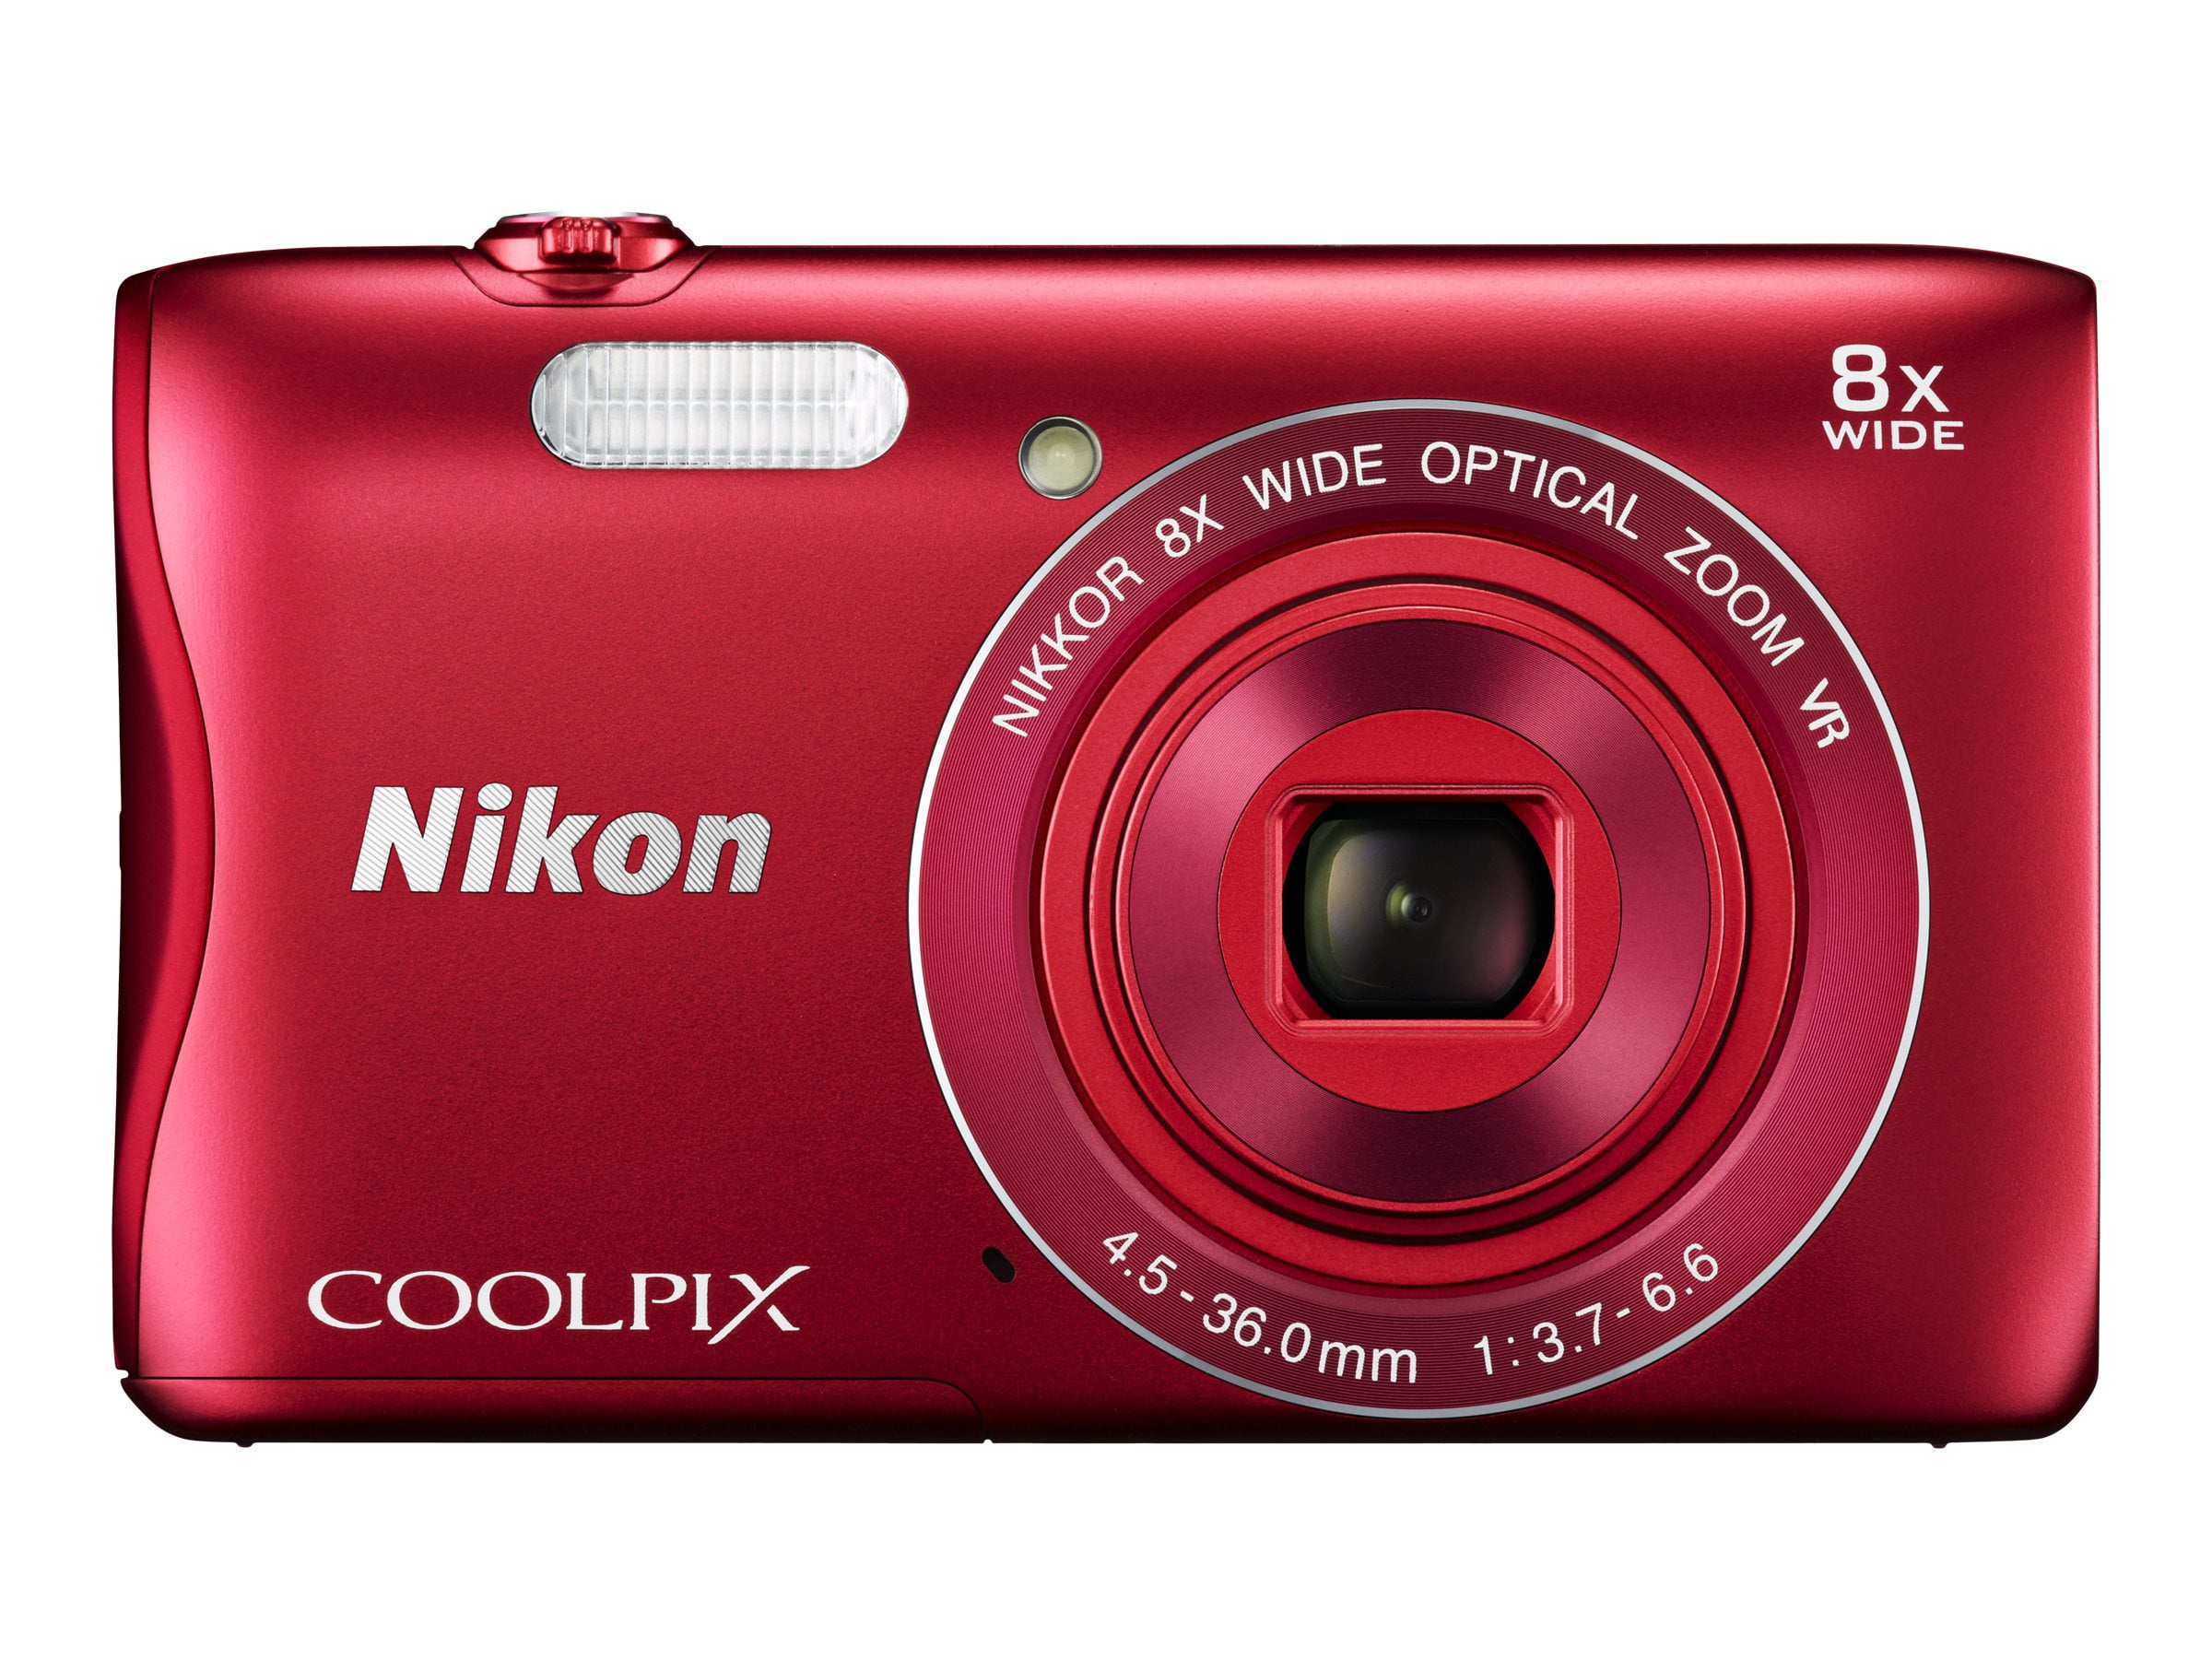 Nikon COOLPIX S3700 Digital Camera with 20.1 Megapixels and 8x 